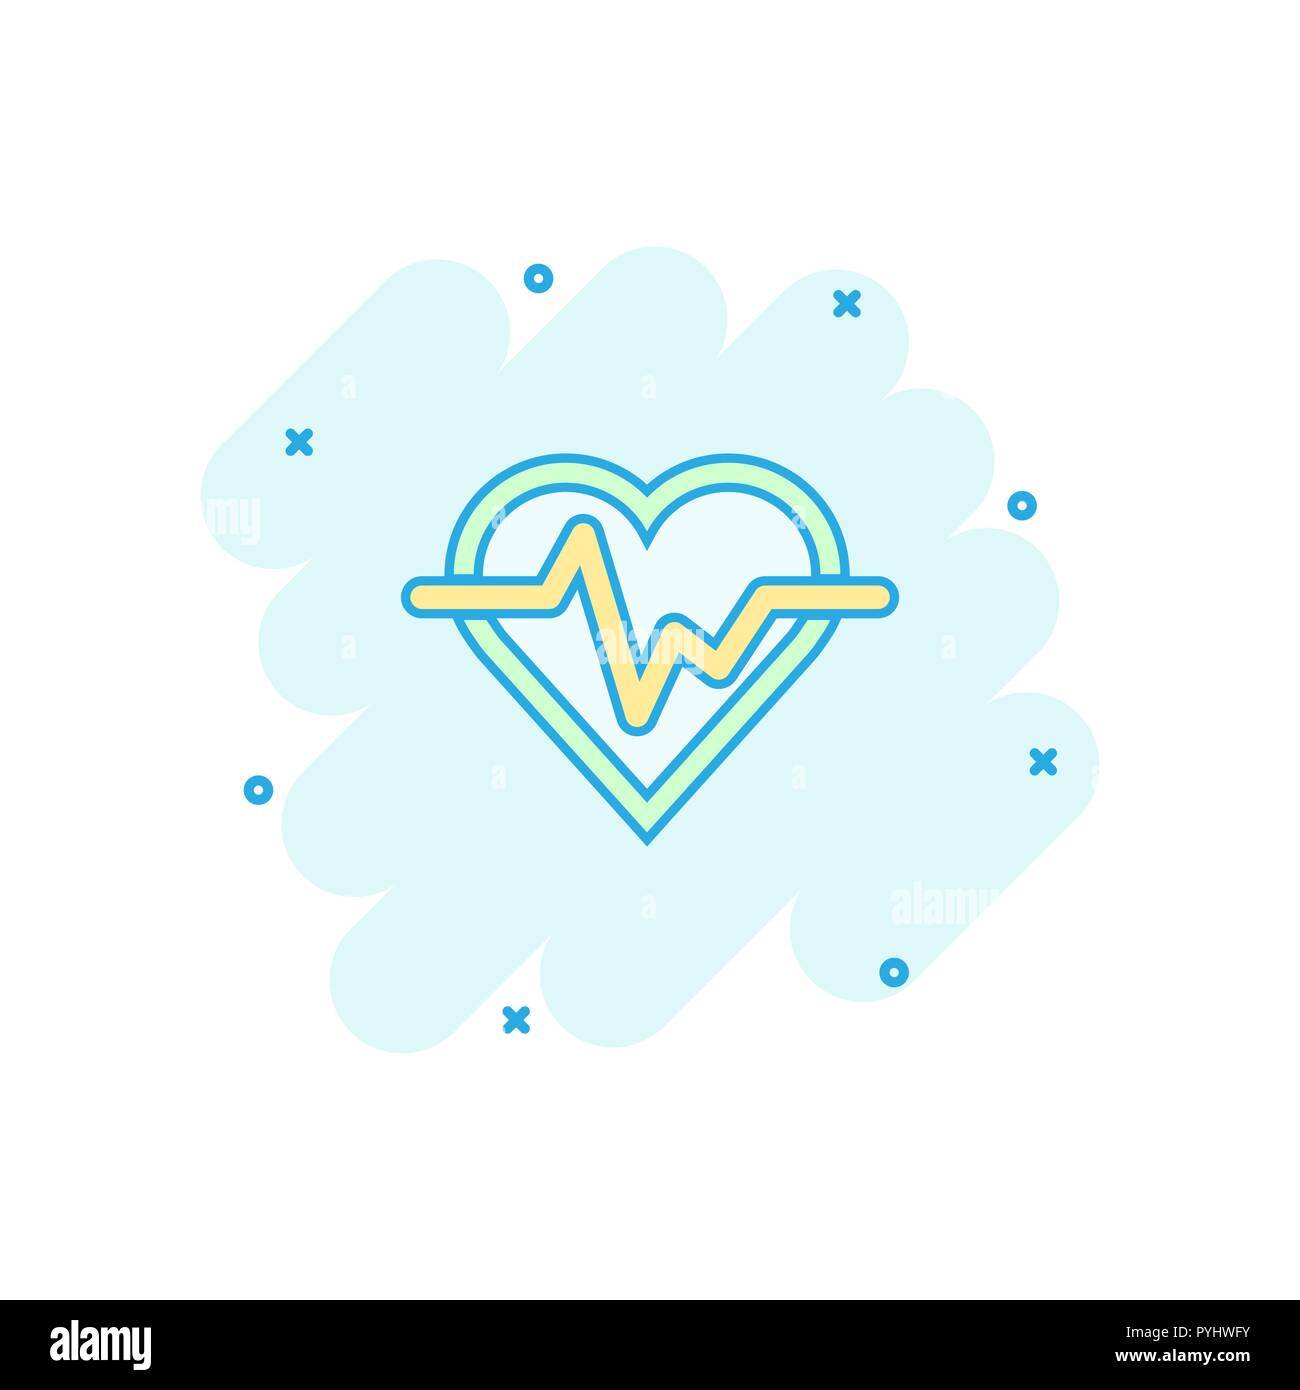 Vector cartoon linea heartbeat con icona a forma di cuore in stile fumetto. Concetto di heartbeat illustrazione pittogramma. Ritmo cardiaco business effetto splash concept. Illustrazione Vettoriale